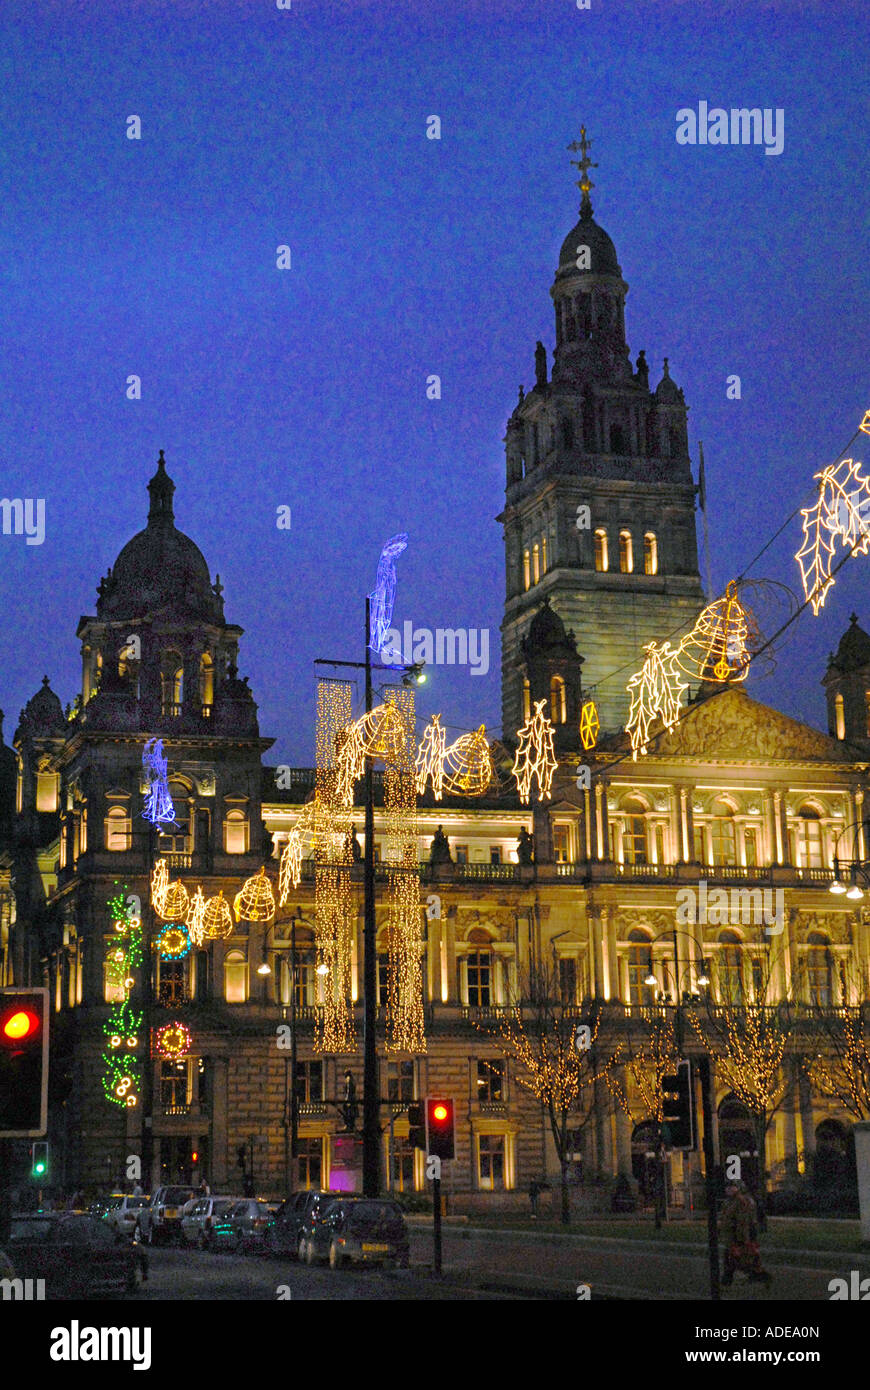 Vue de nuit sur George Square la veille de Noël, montrant la ville Chambers allumé,et Lumières de fête. Glasgow. L'Écosse. Banque D'Images